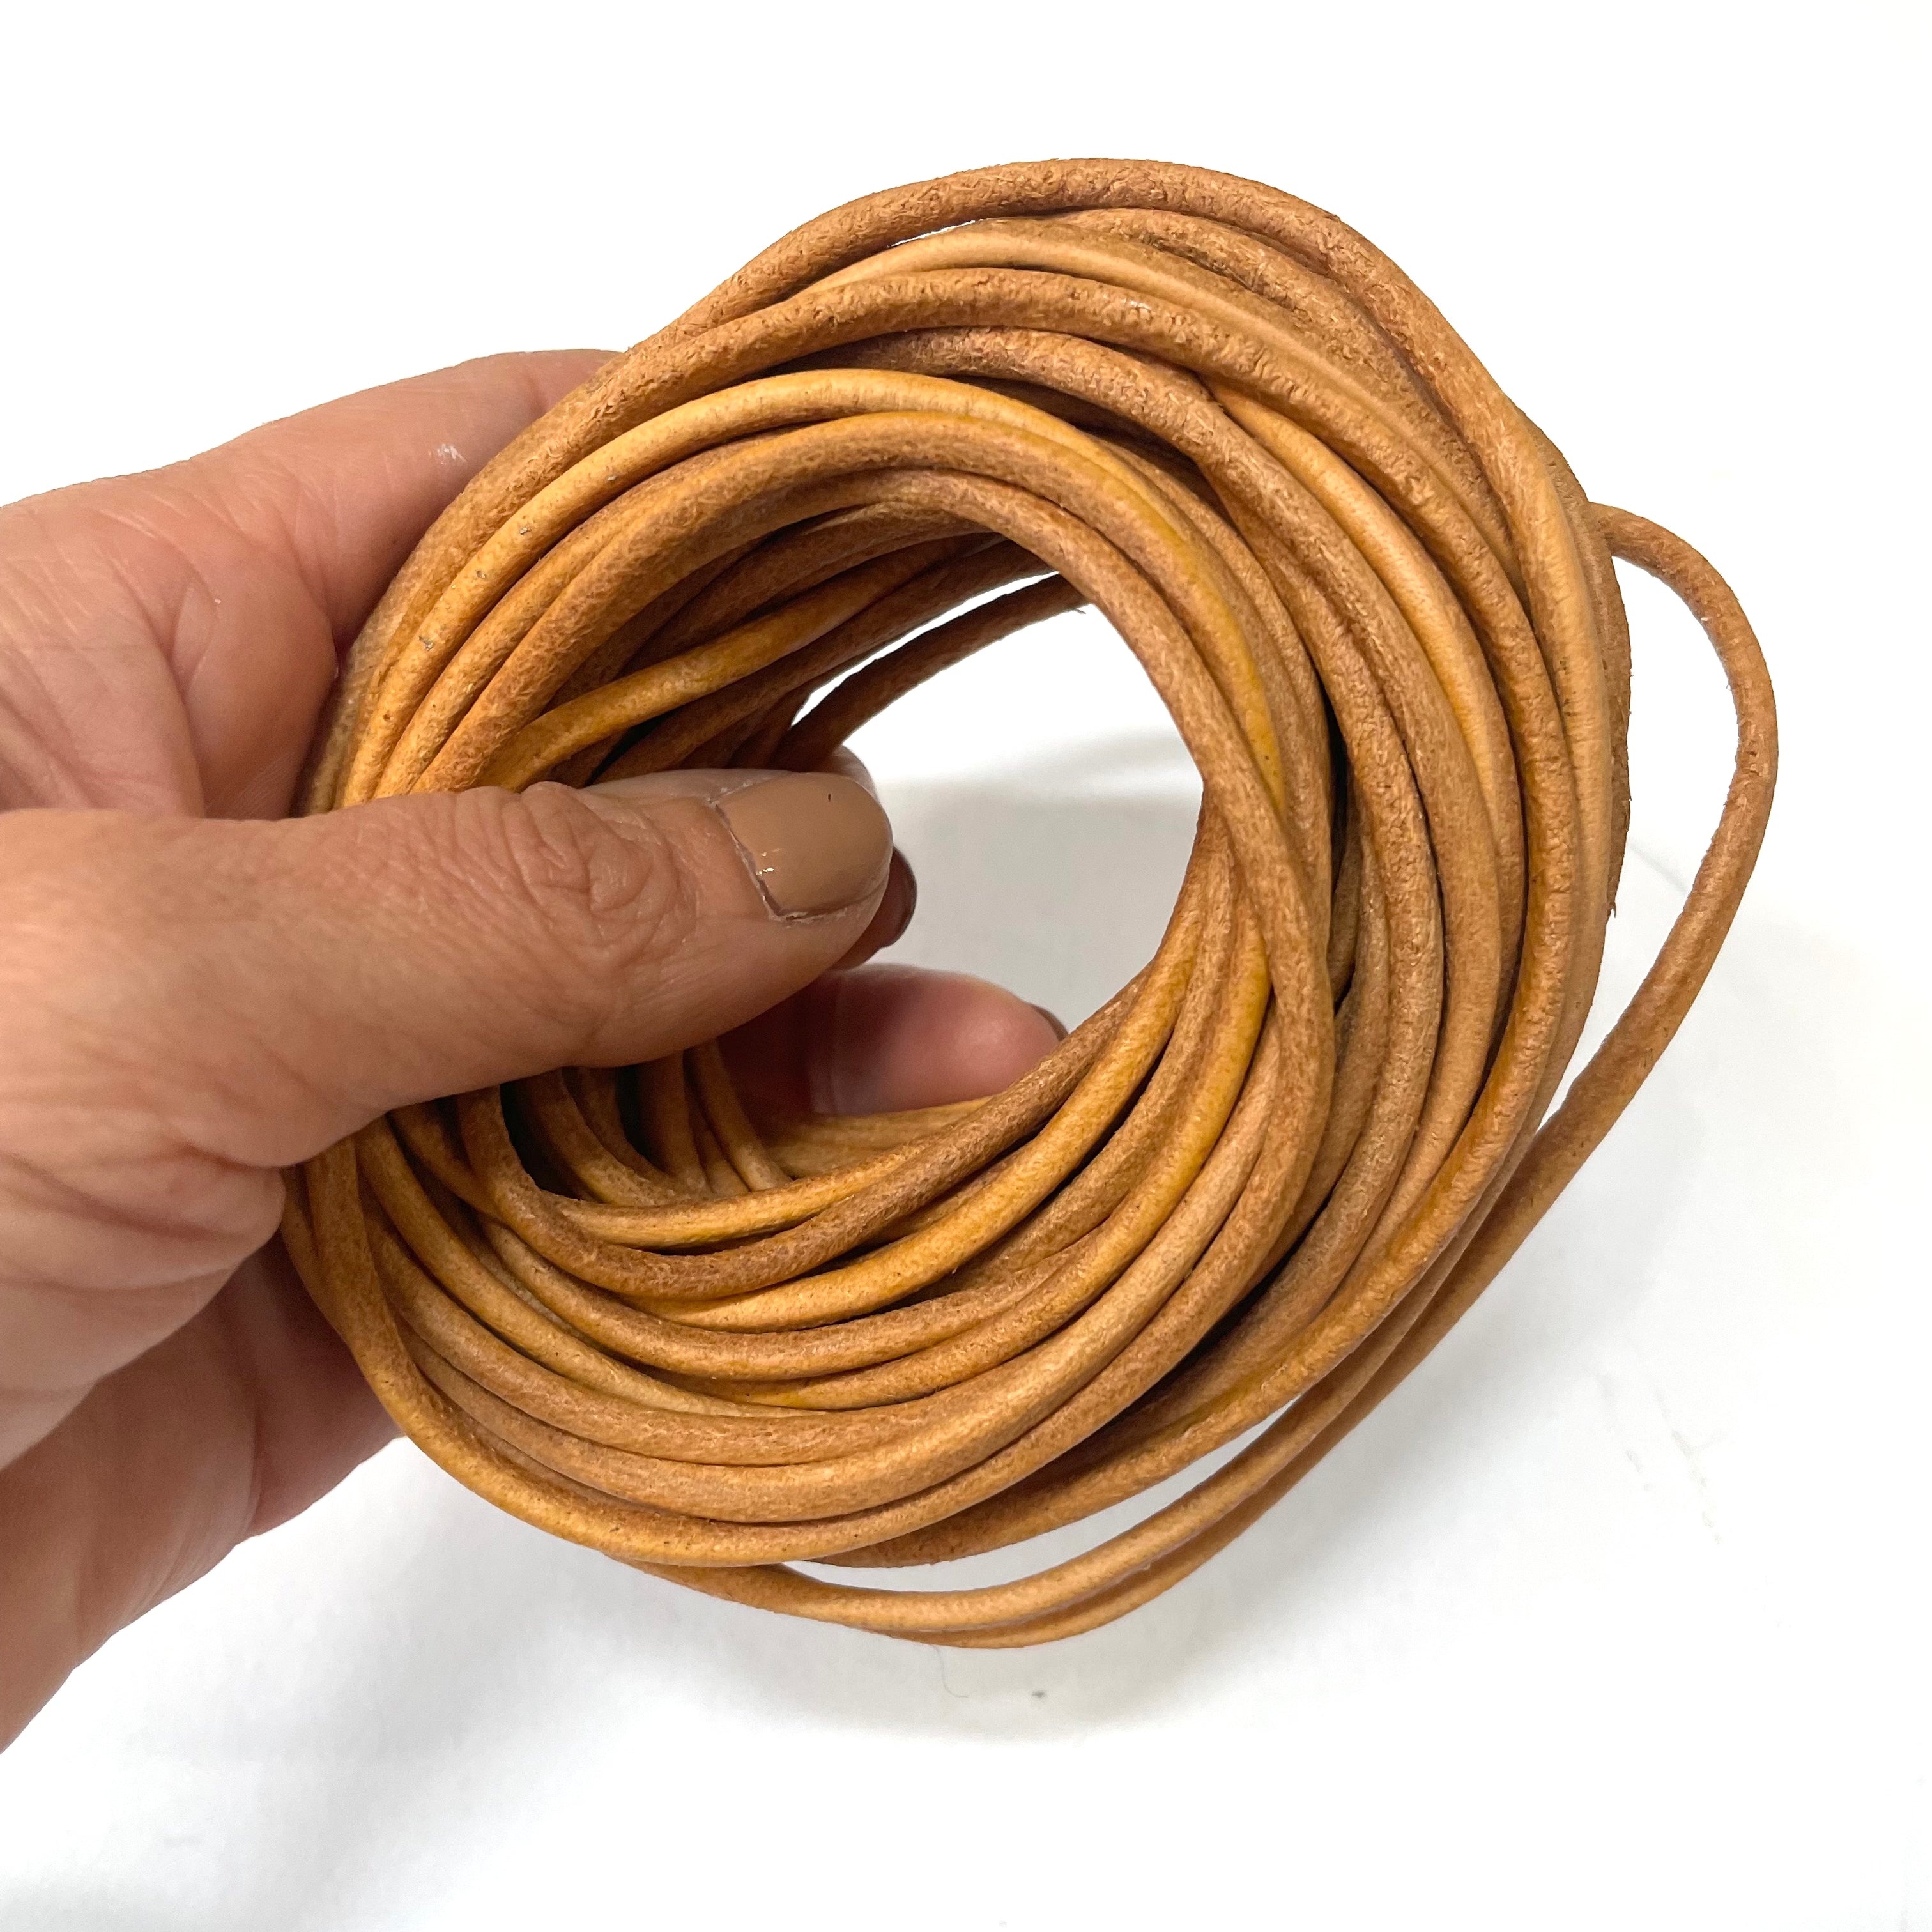 Natural Genuine Leather Cord per 10 Yards - Natural Tan Brown 3mm